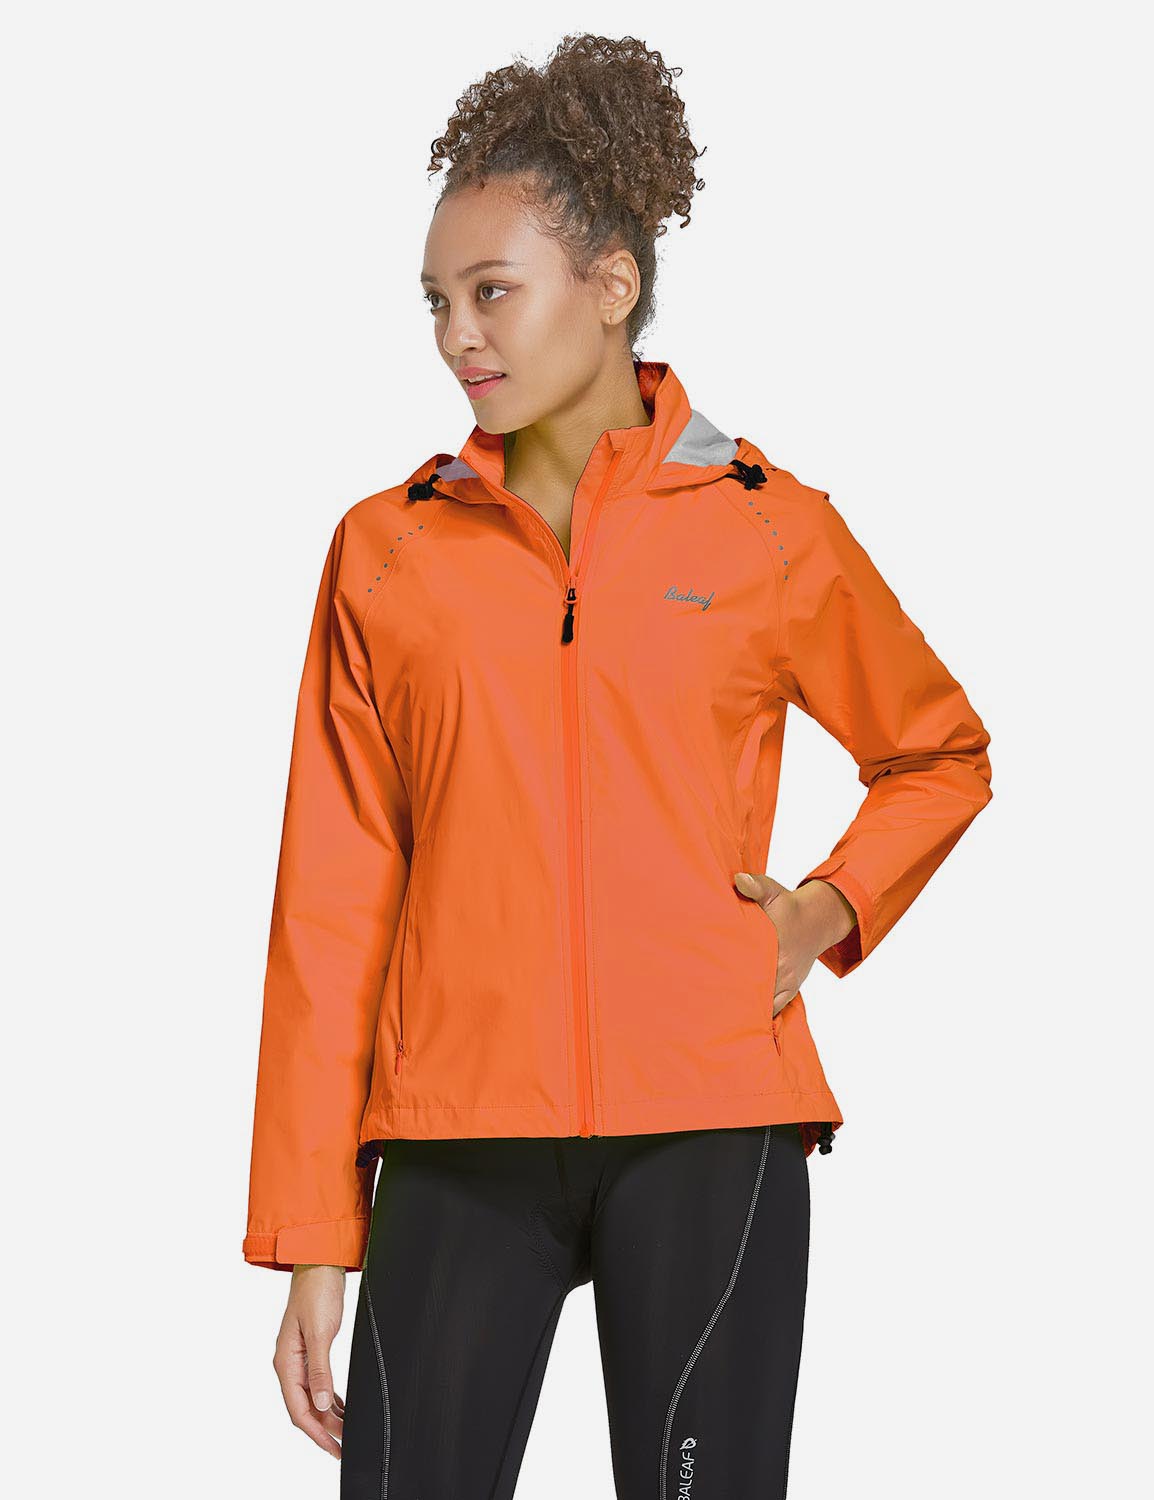 Baleaf Women's Waterproof Lightweight Full-Zip Pocketed Cycling Jacket aaa468 Orange Side